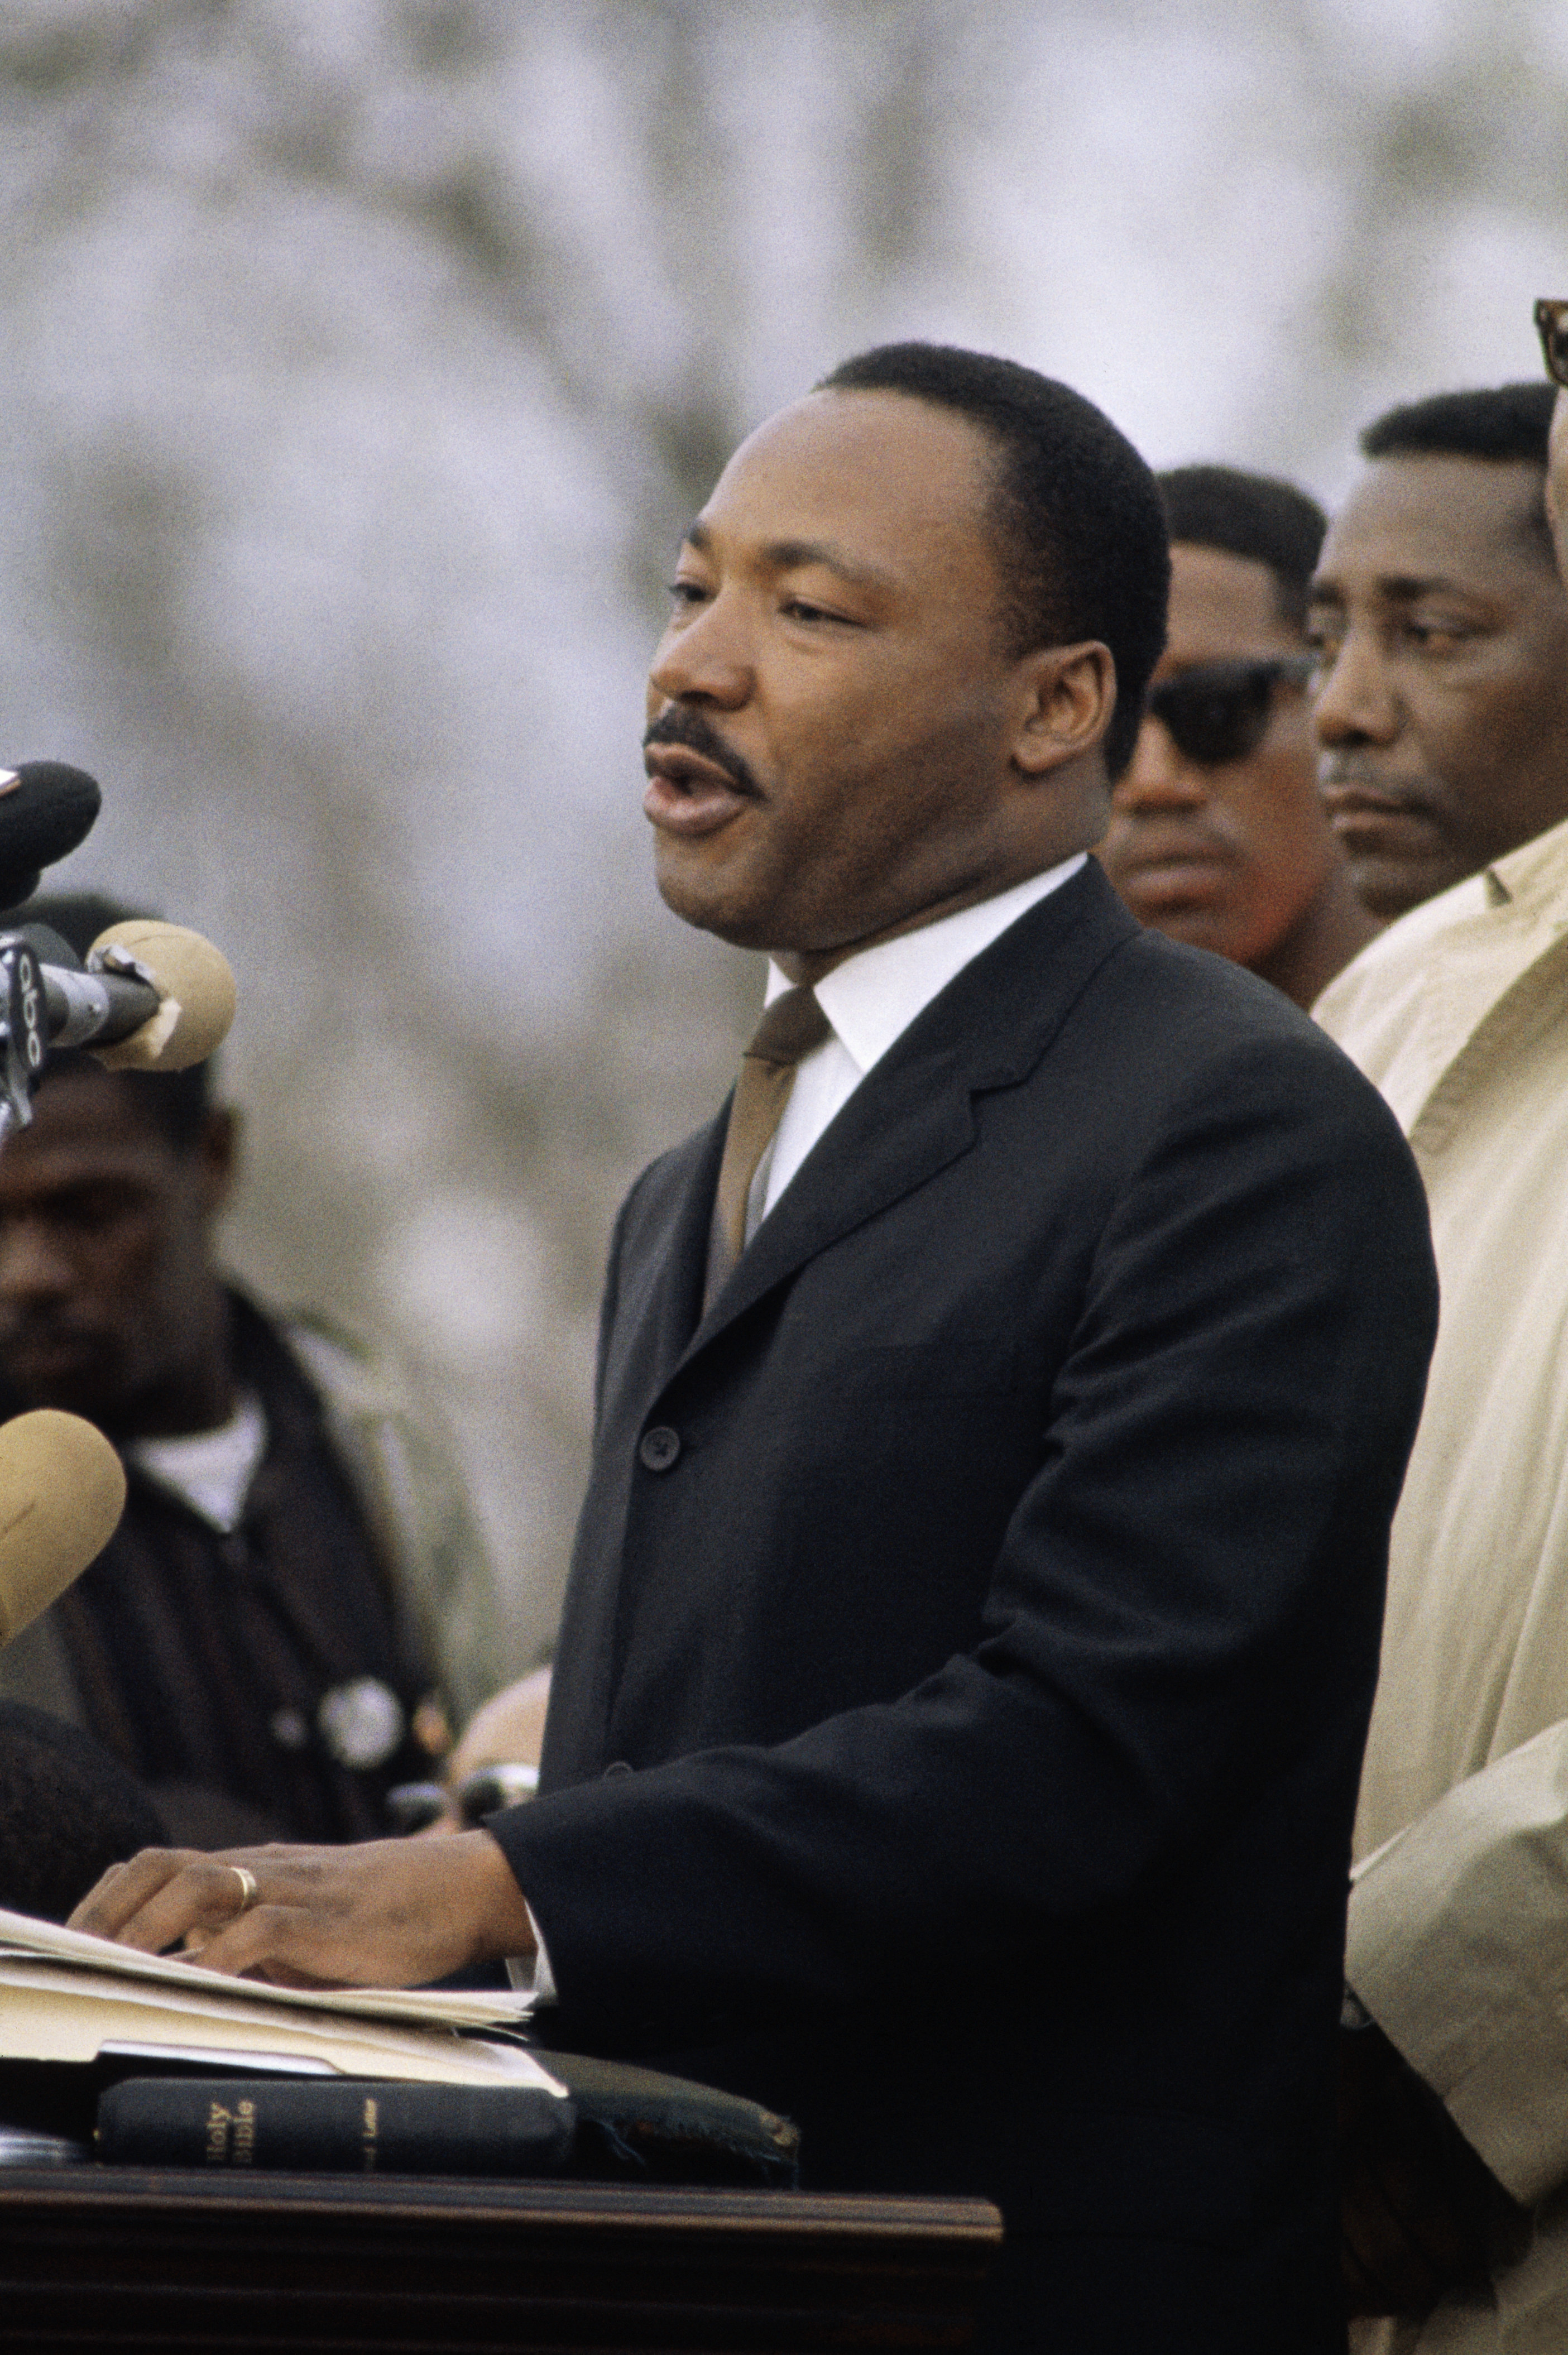 Dr King at a speech